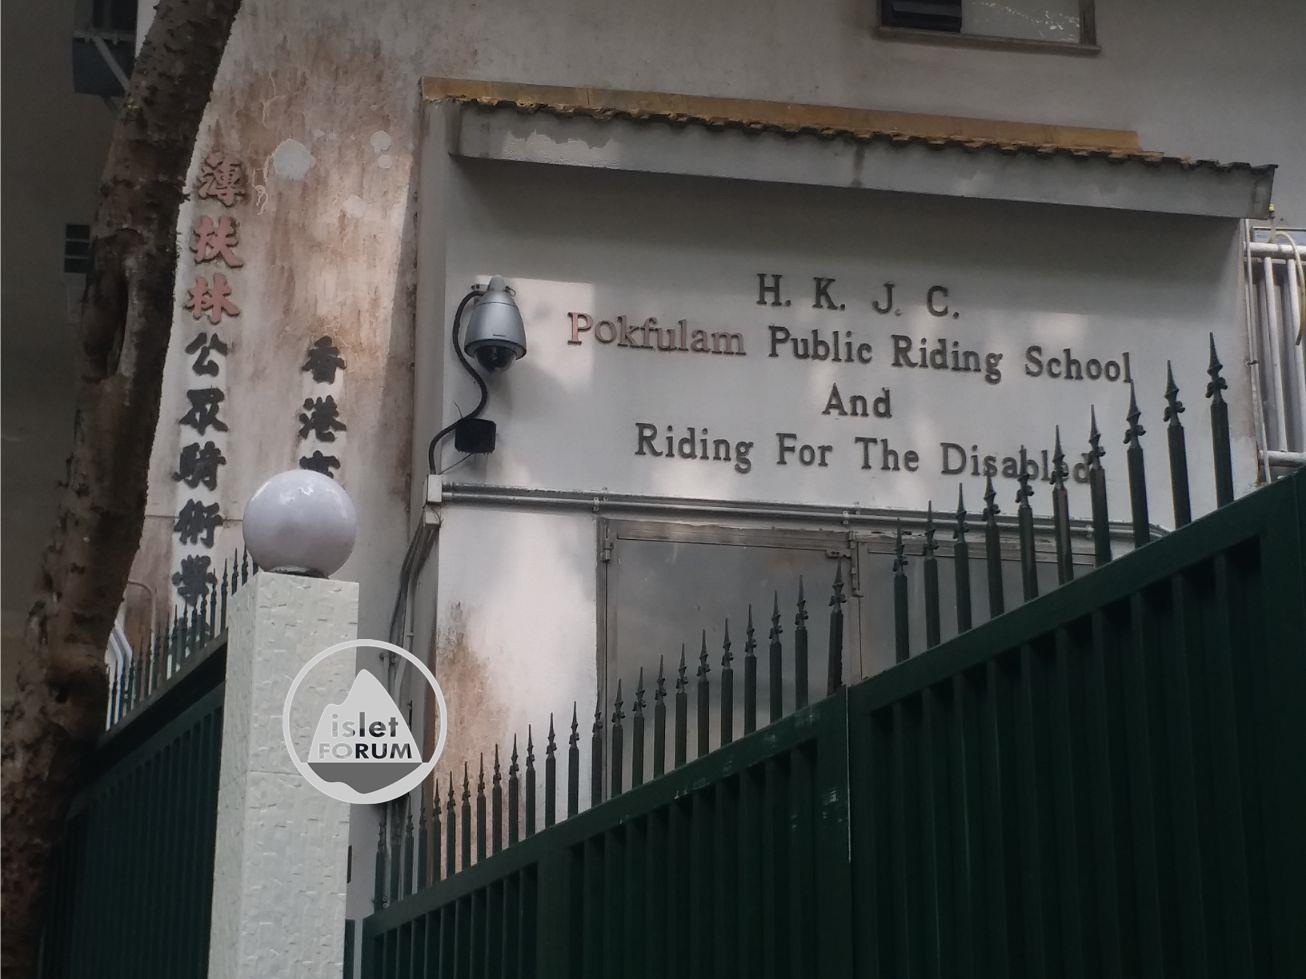 薄扶林公眾騎術學校 Pokfulam Public Riding School (18).jpg